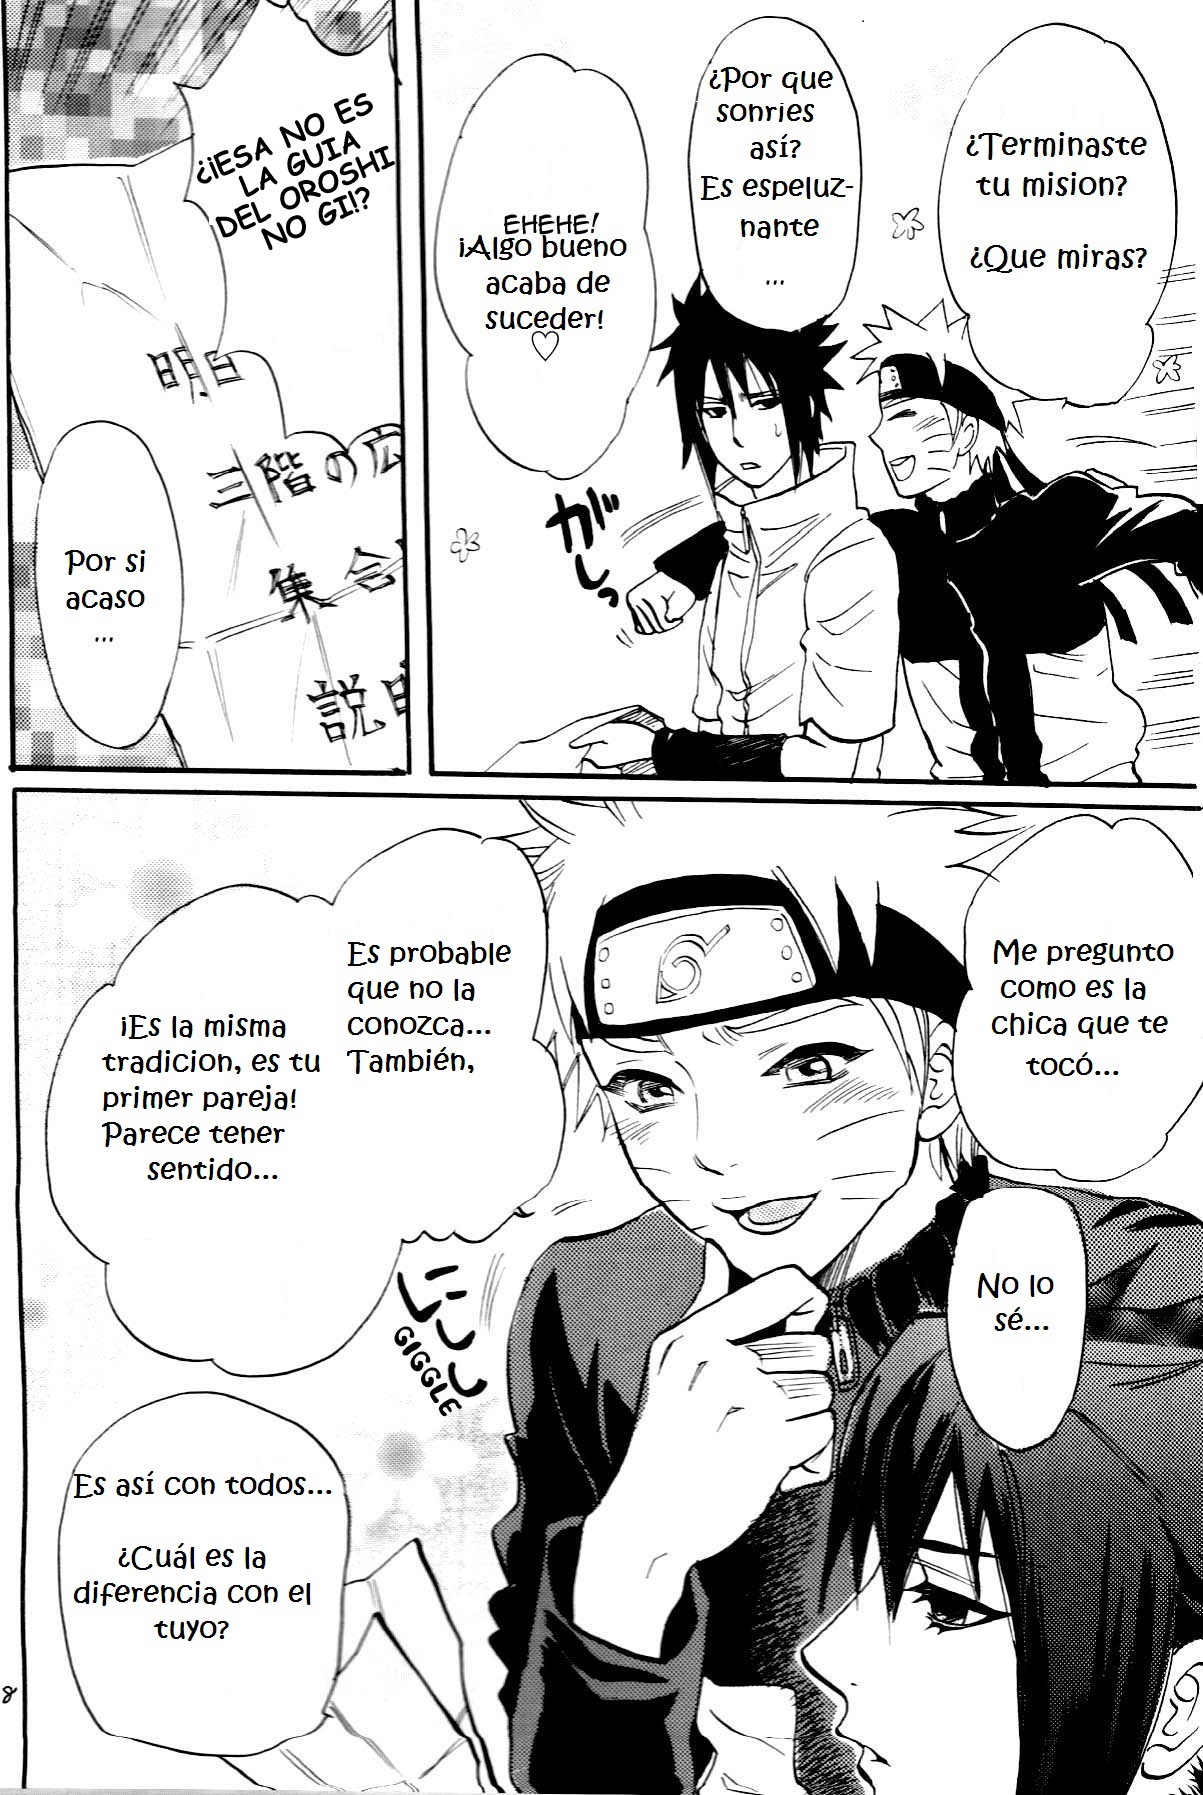 Fude Oroshi no Gi (Naruto Manga Yaoi) - 7 - Comics Porno - Hentai Manga - Cartoon XXX